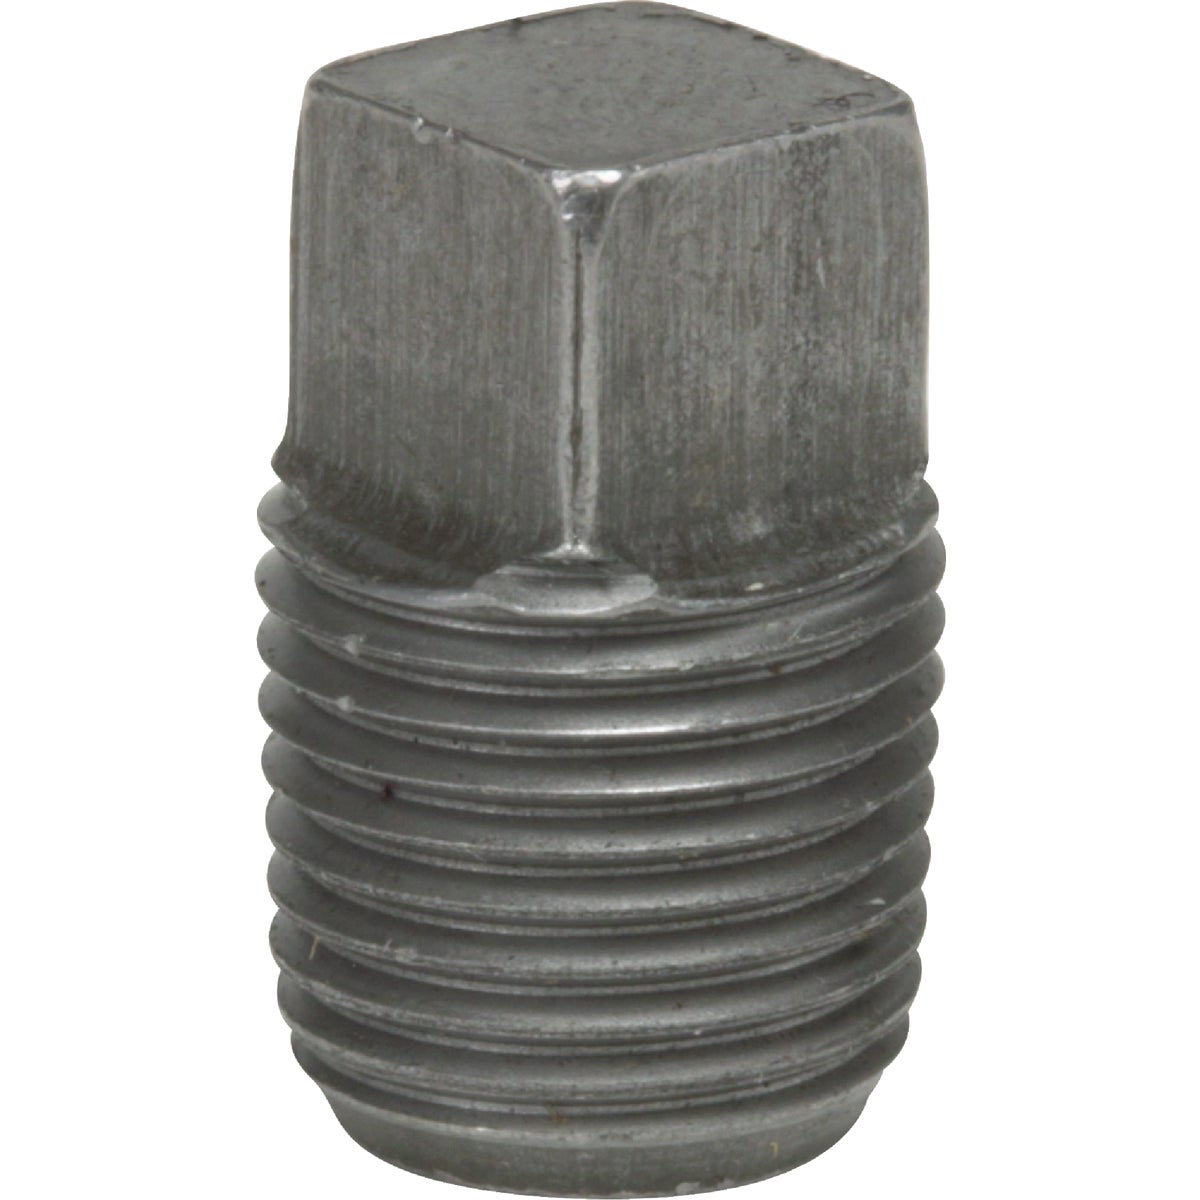 Anvil 1-1/4 In. Malleable Black Iron Square Head Pipe Plug